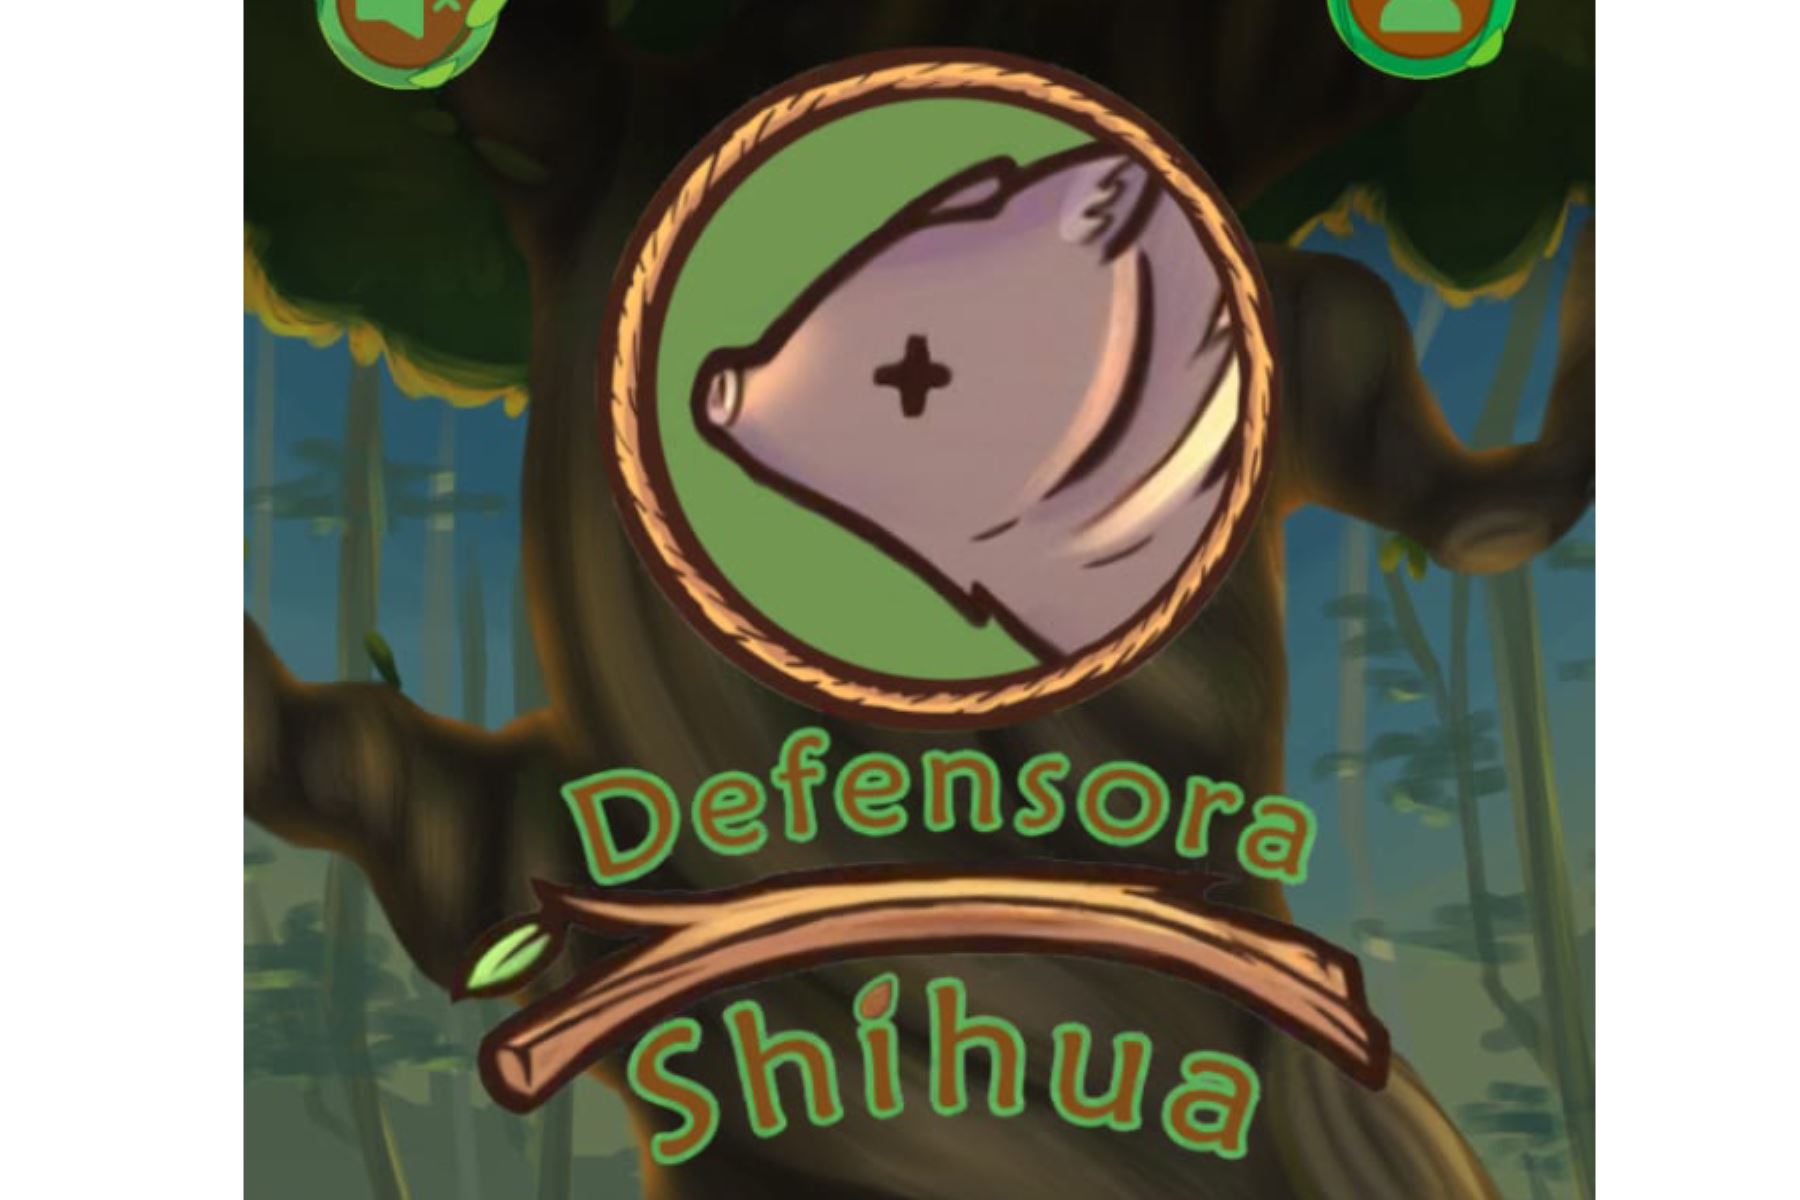 La protagonista de este videojuego es una sajina llamada Shihua cuya misión es defender el bosque amazónico.